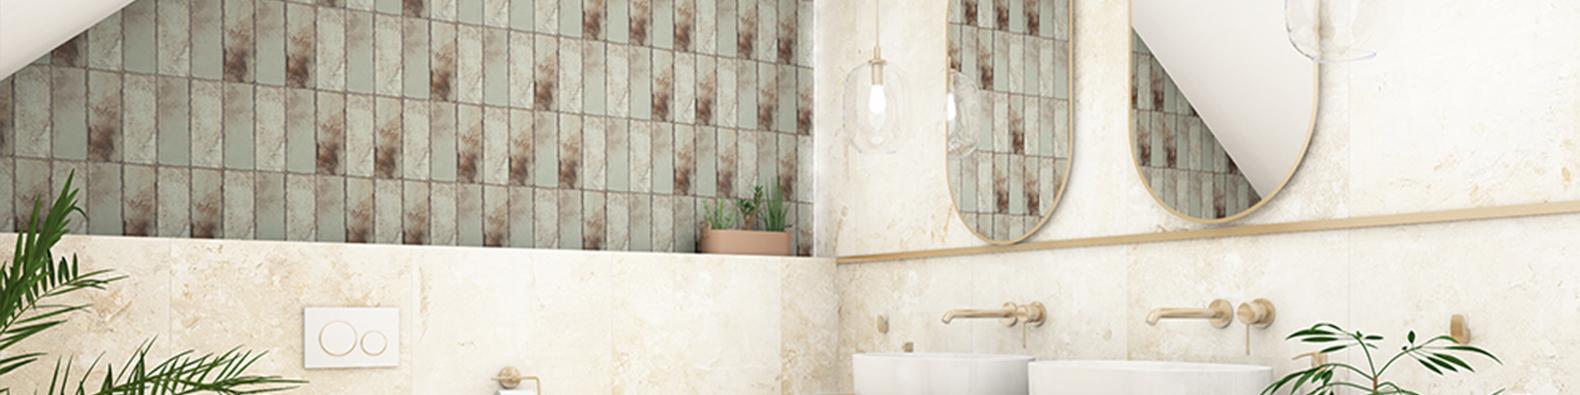 Dekoracyjne płytki mozaika na ścianie w łazience